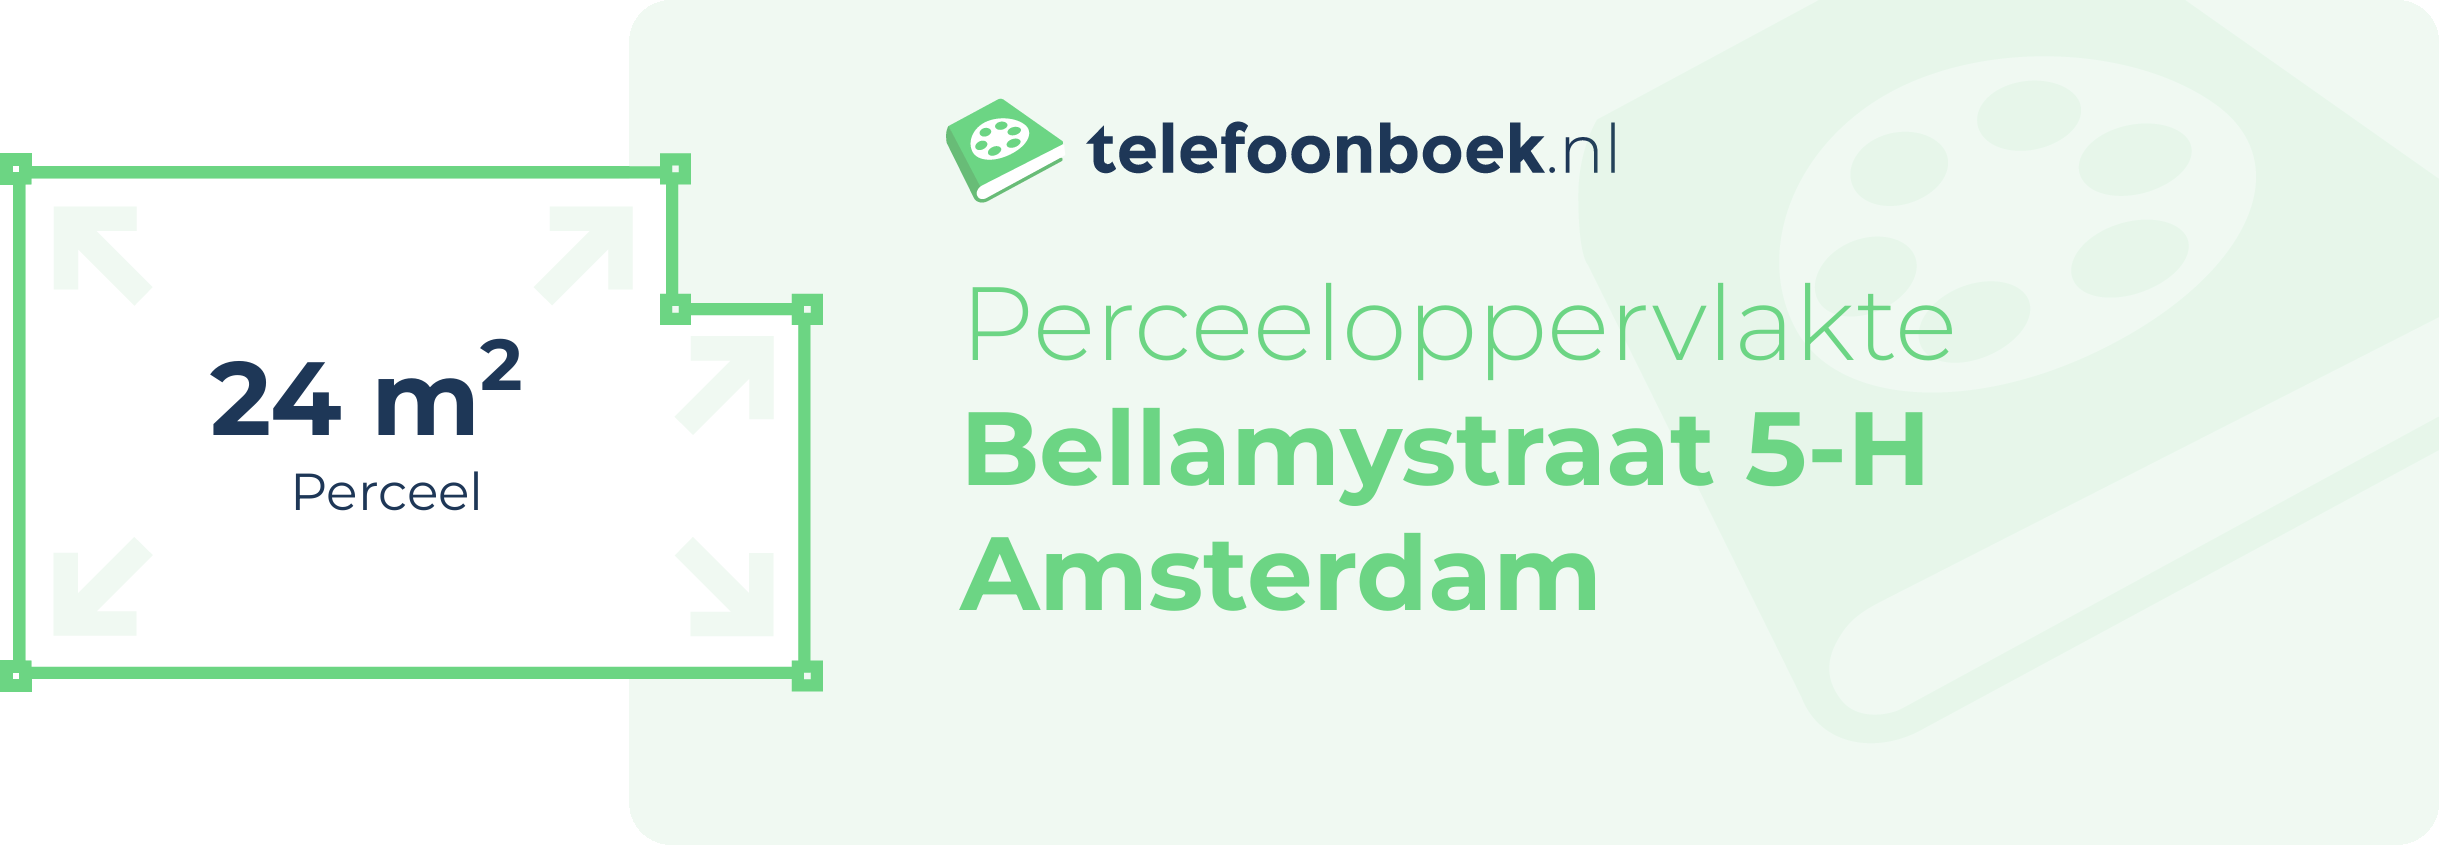 Perceeloppervlakte Bellamystraat 5-H Amsterdam